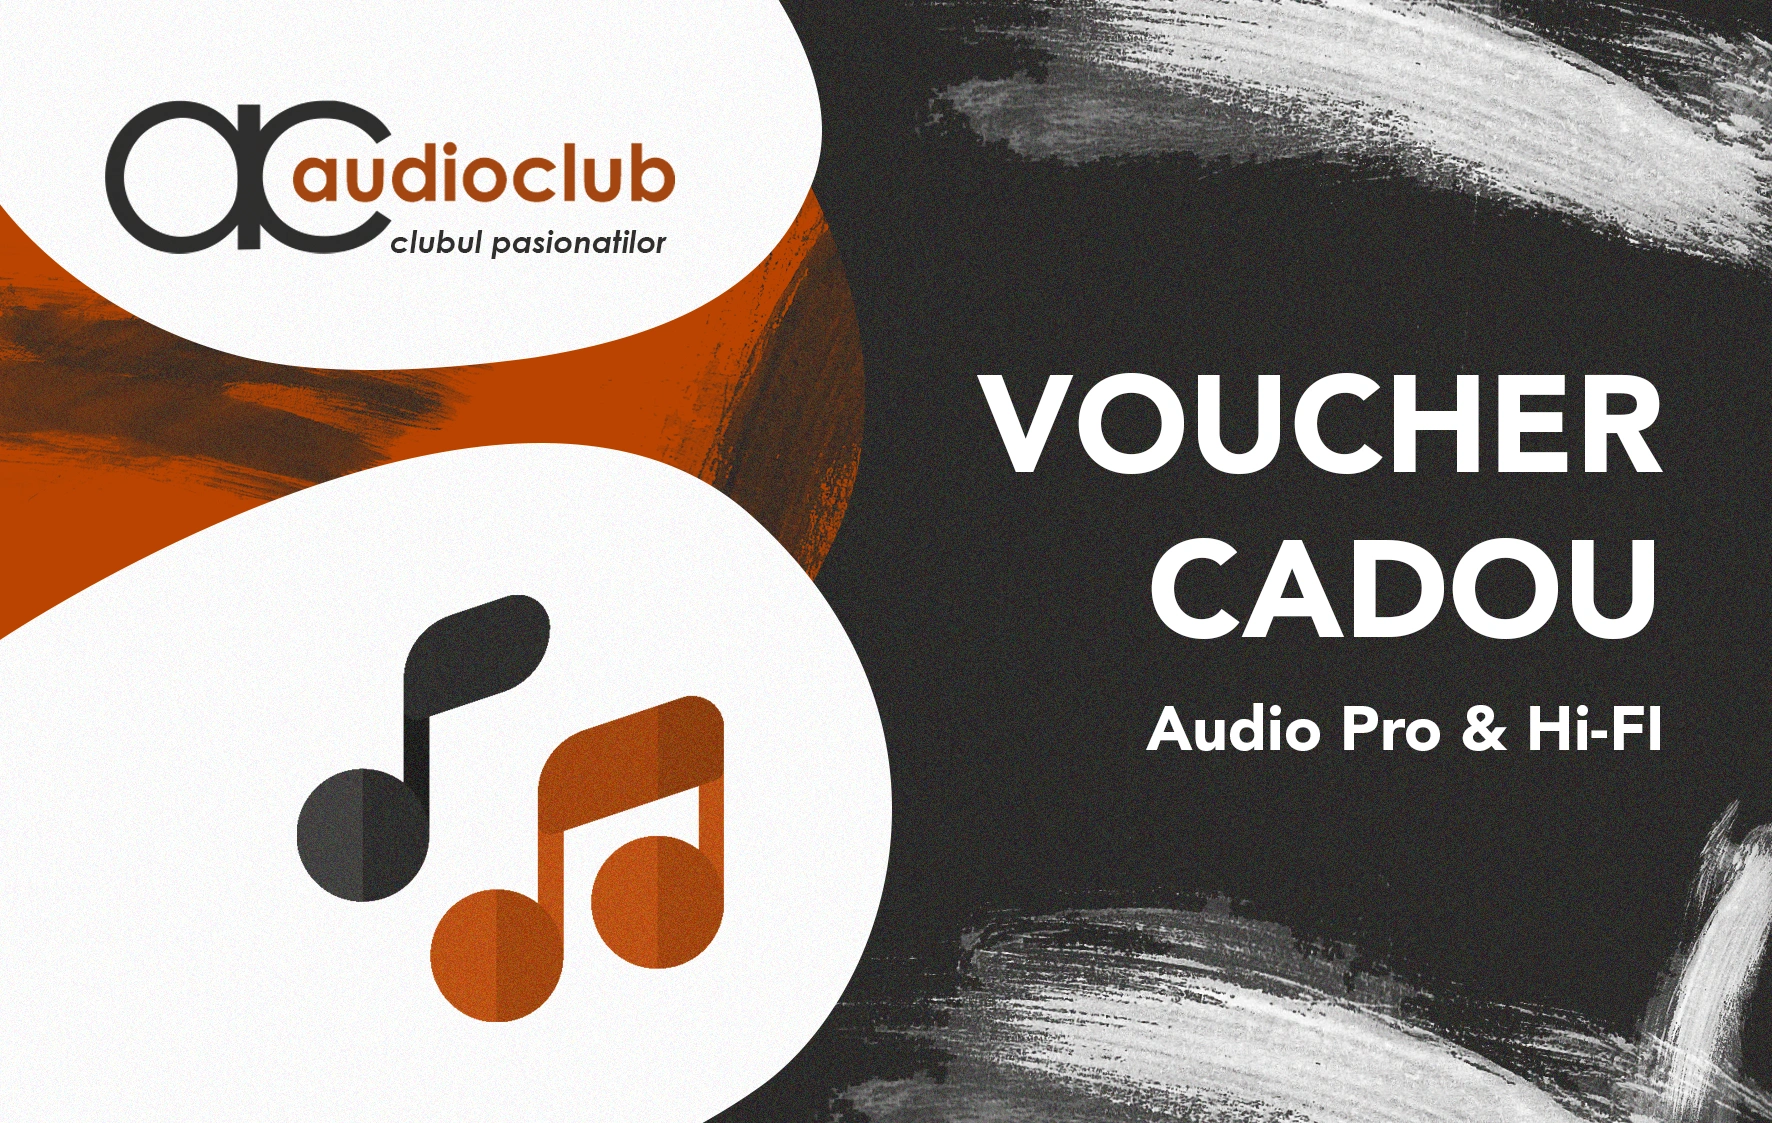 Carduri cadou & vouchere - Audioclub Voucher 1000 Ron, audioclub.ro